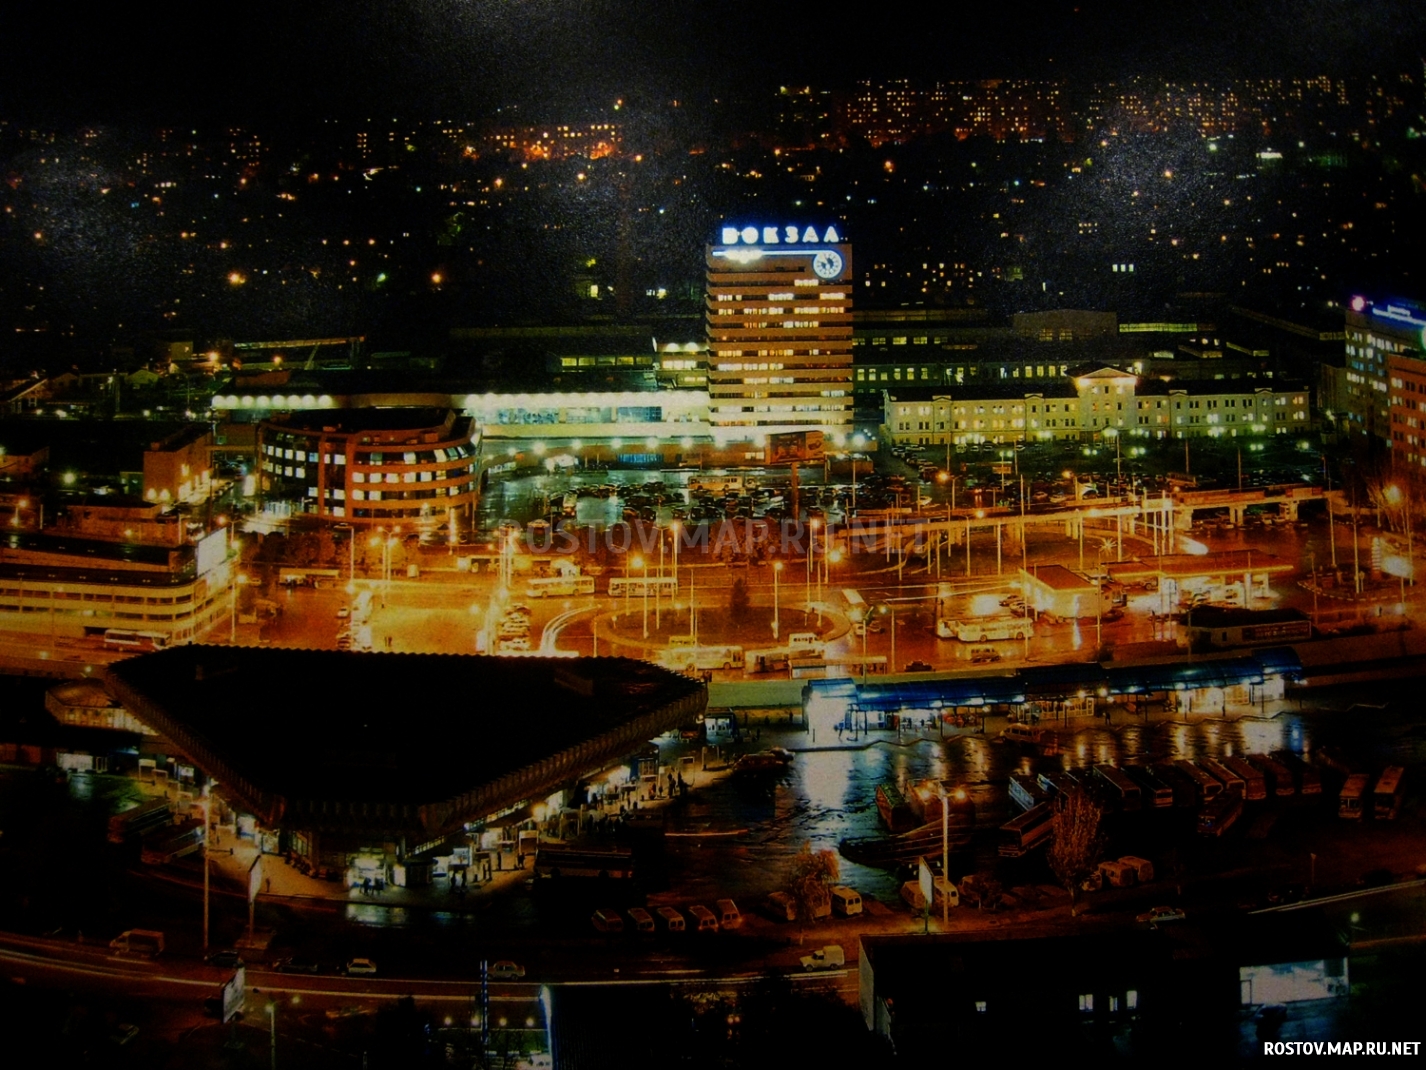 Ростов-на-Дону, панорама ночного горда, Современные, Профессиональные